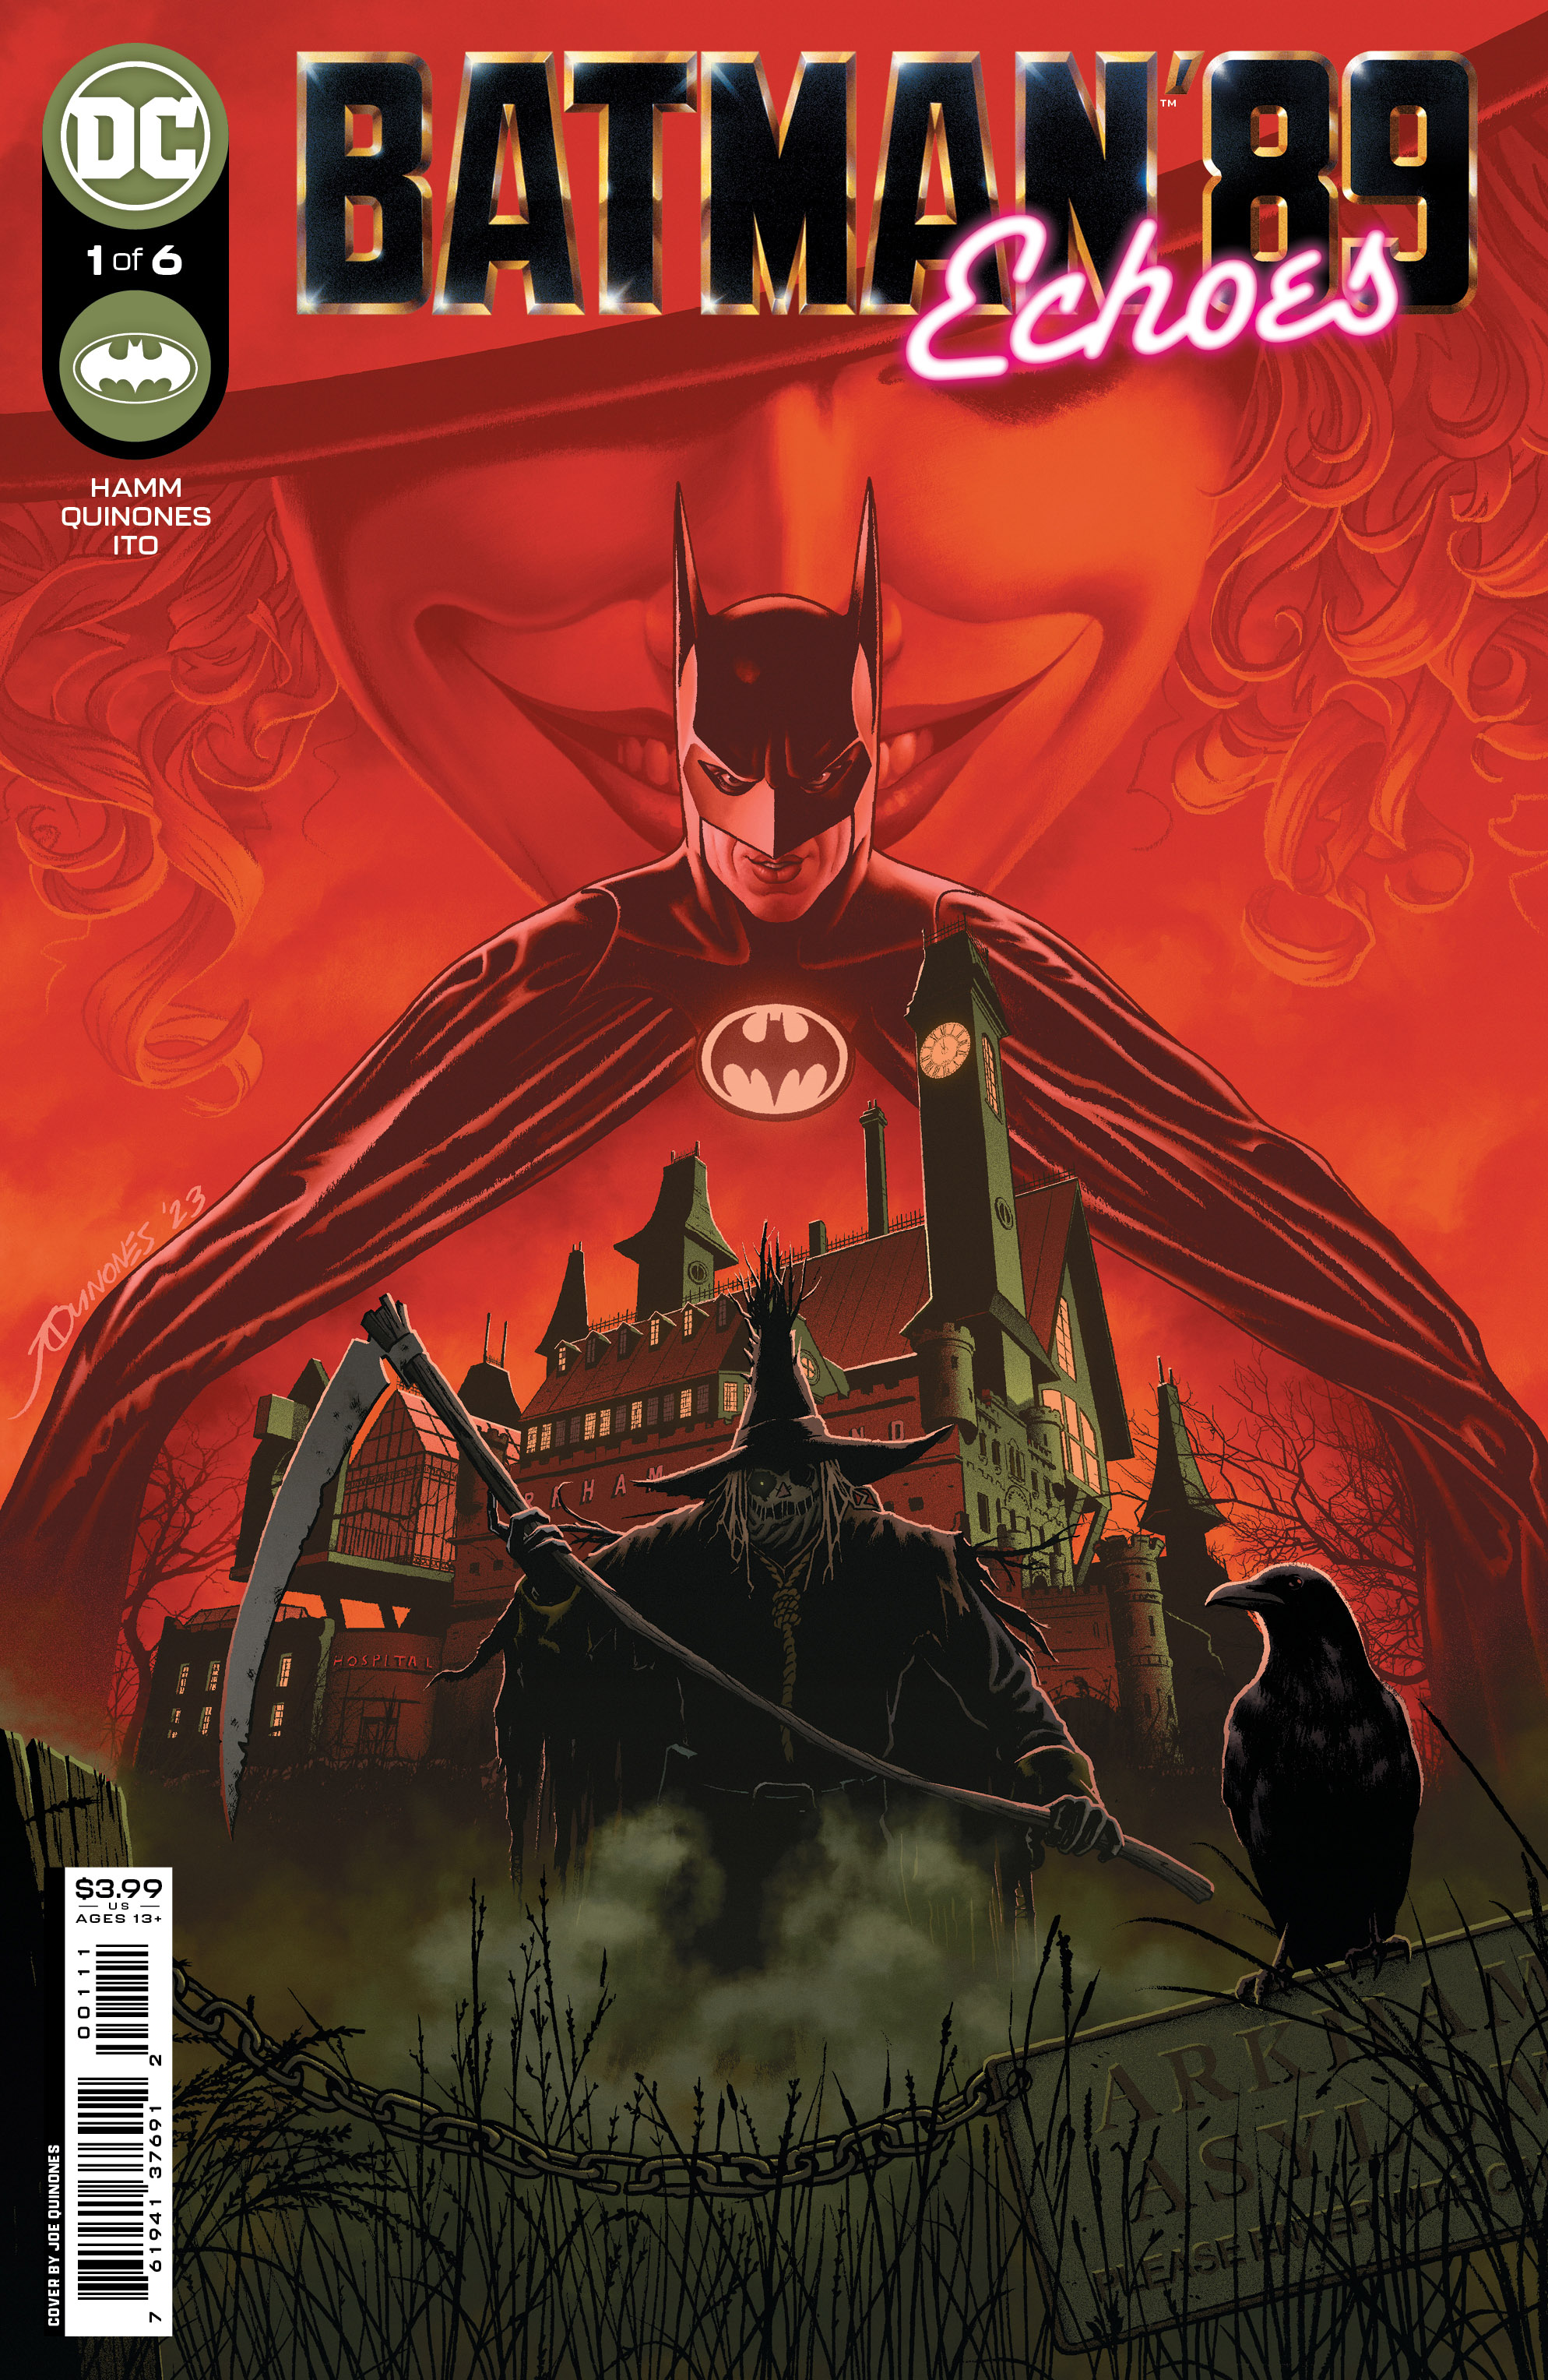 Batman 89 Echoes #1 Cover A Joe Quinones (Of 6)